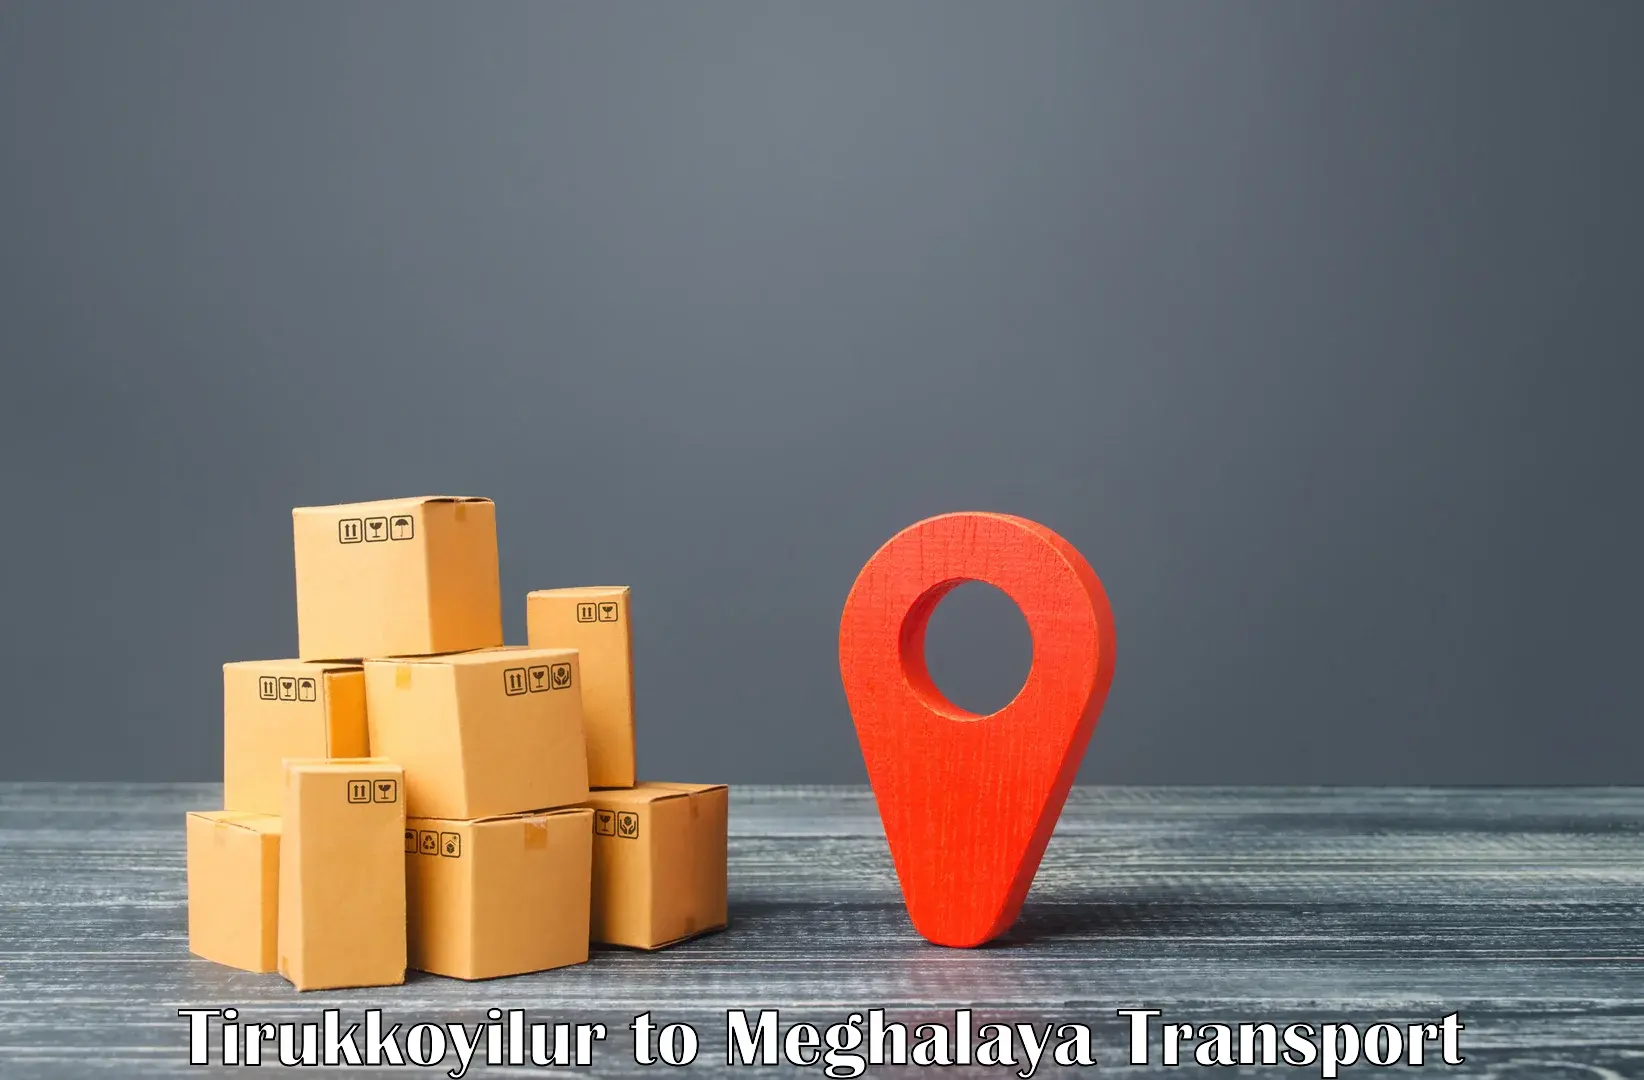 Nearby transport service Tirukkoyilur to Williamnagar